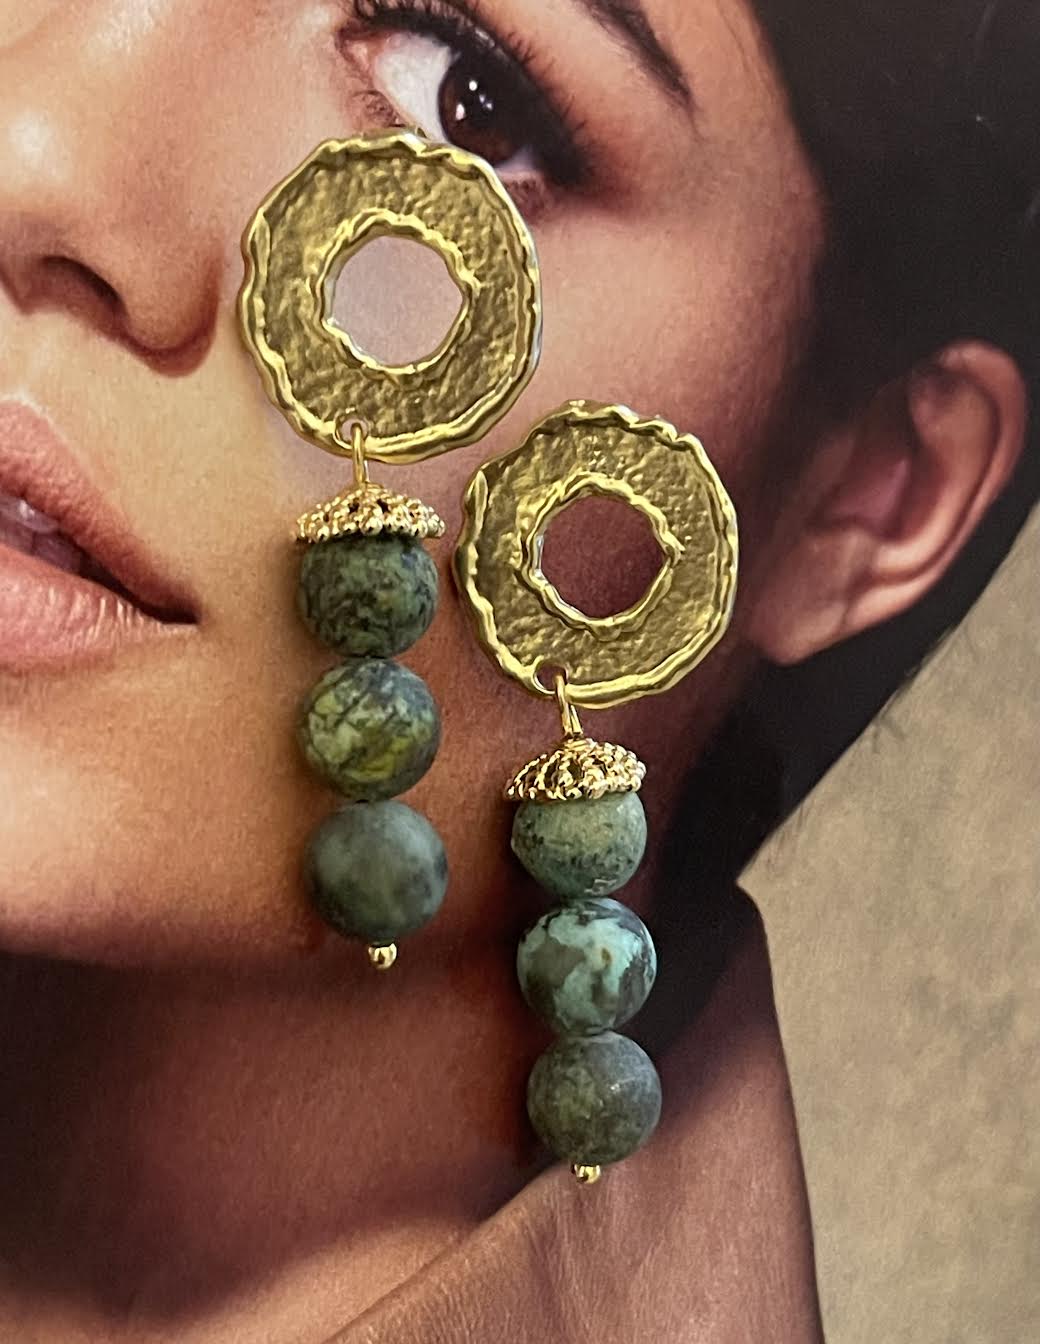 Aros Hippie Chic bañados en oro con preciosas piedras naturales en tonos verdes.